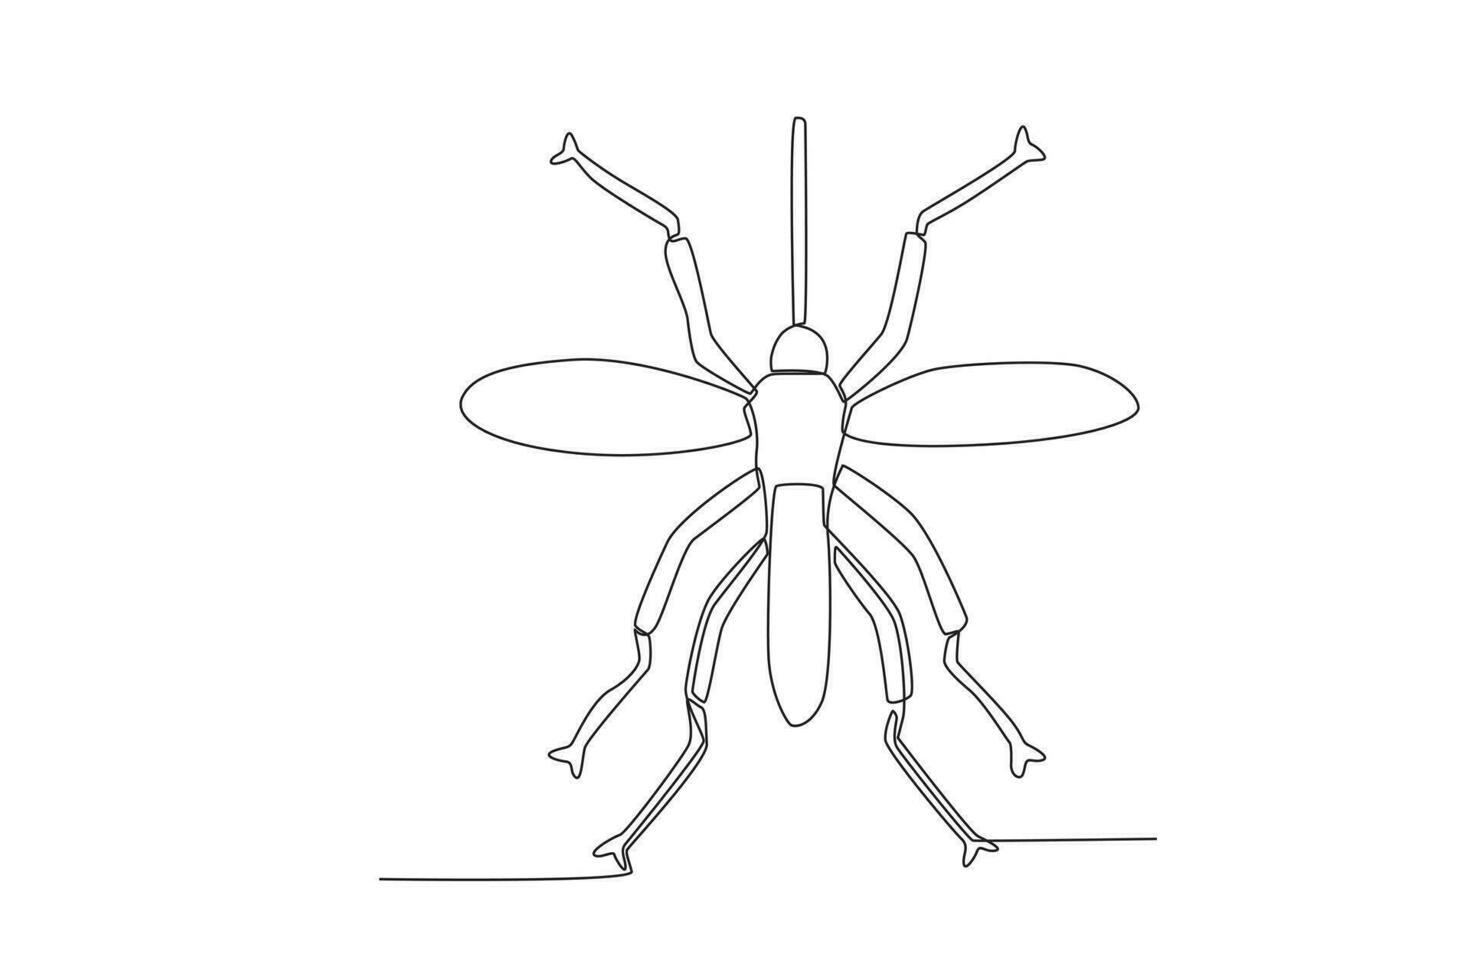 uma solteiro contínuo linha desenhando do a mosquito para a da fazenda logotipo identidade. solteiro linha desenhando gráfico Projeto vetor ilustração